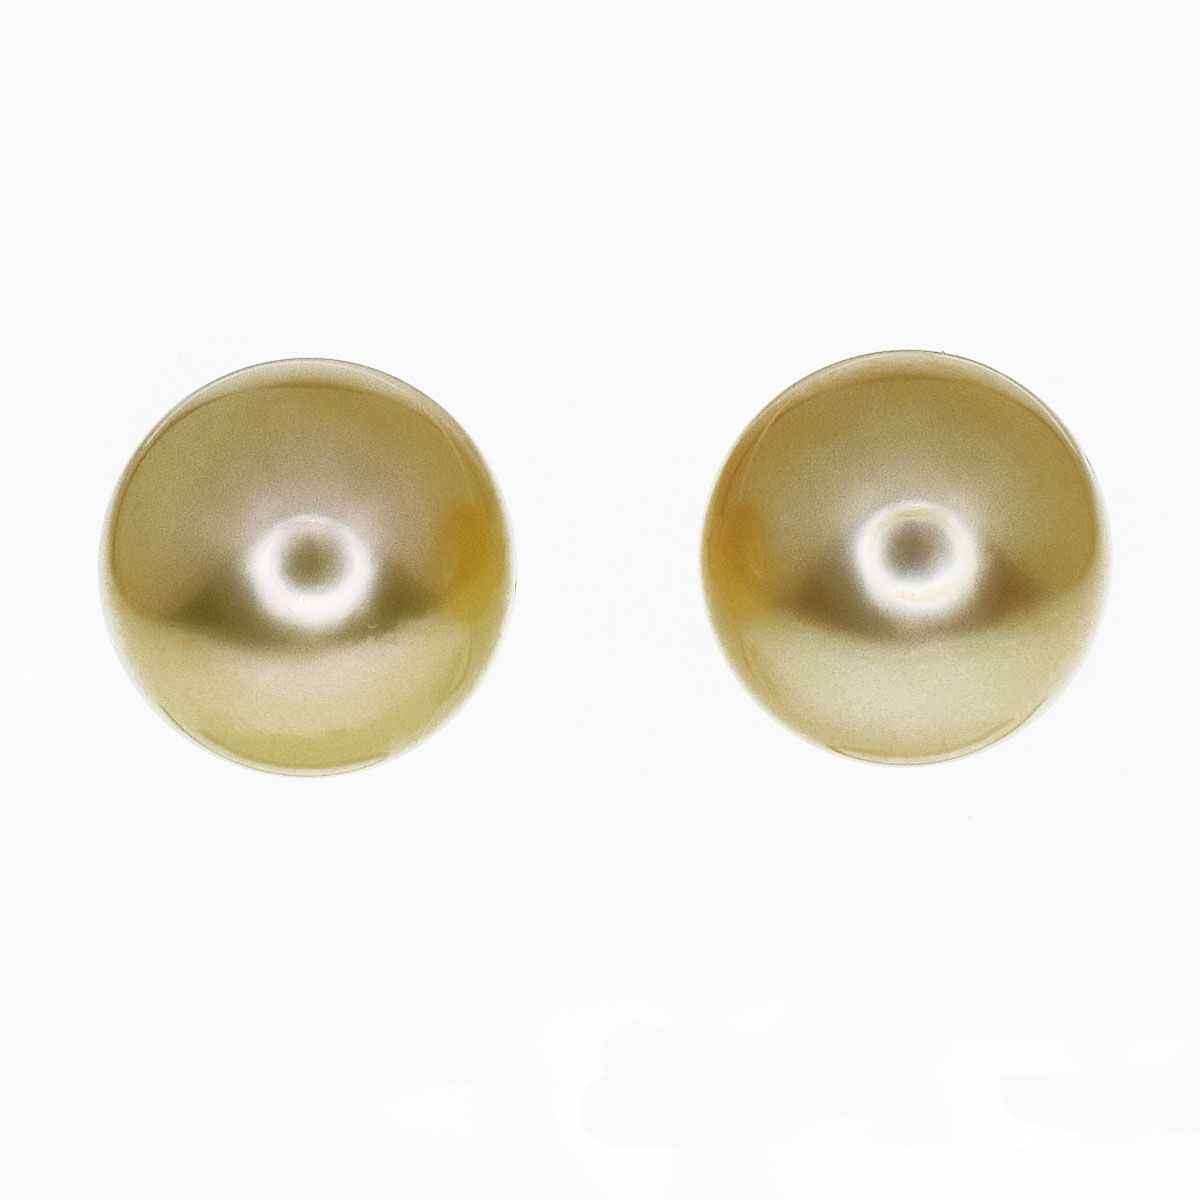 真珠(8.32mm-8.36mm)ロング ゴールド ピアス 750 K18 YG イエローゴールド【送料無料】【代引き手数料無料】23571024付属品